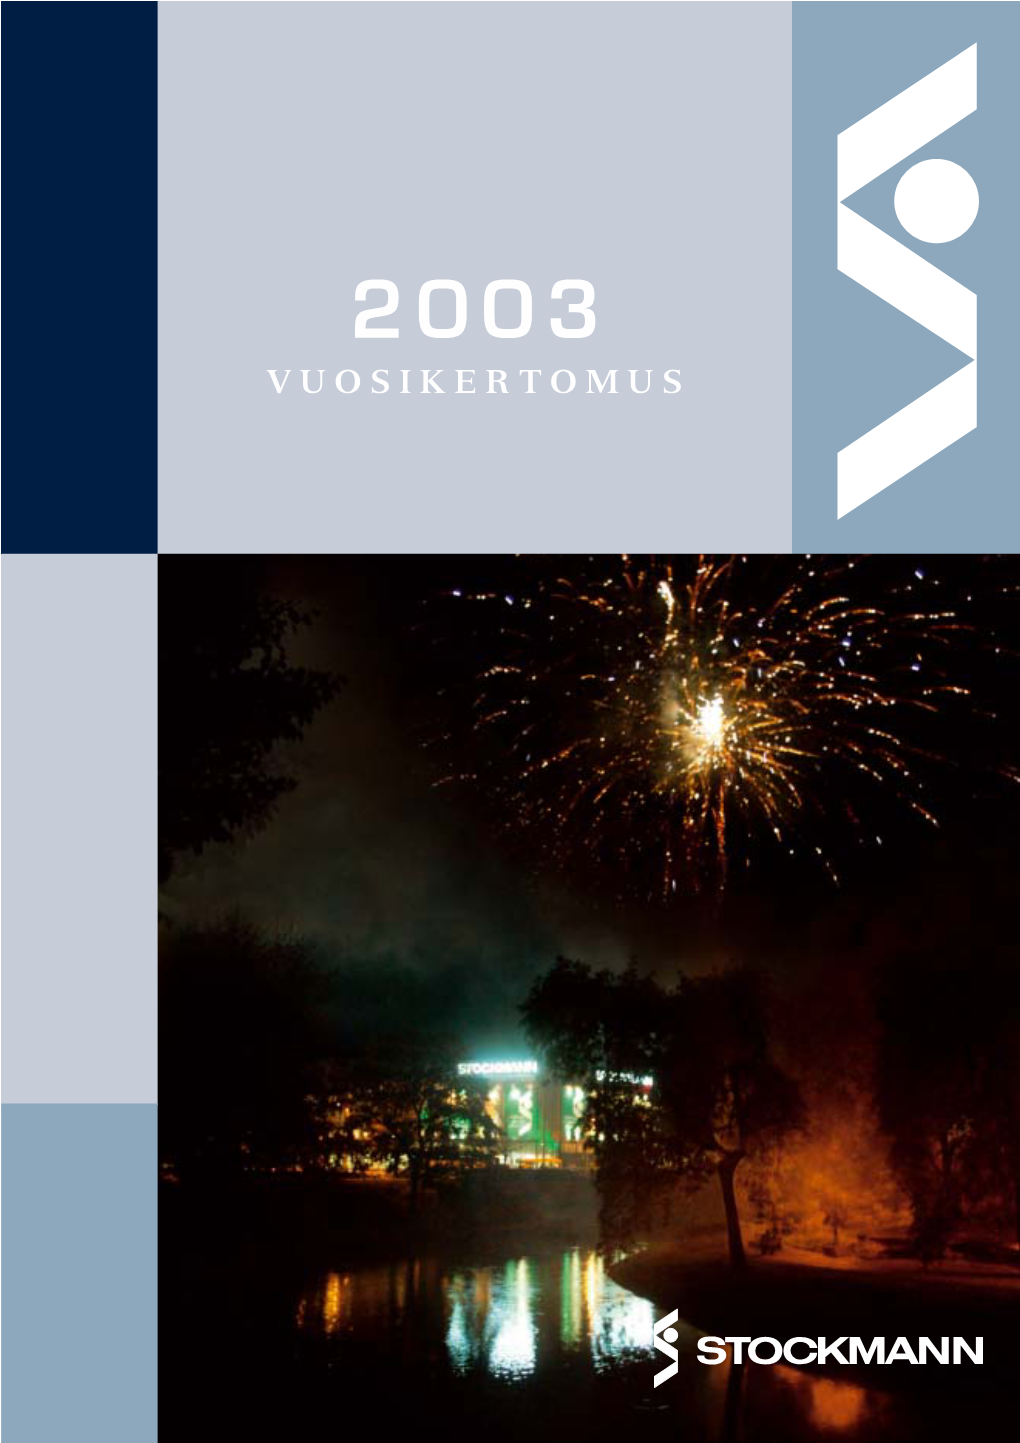 Stockmann Vuosikertomus 2003